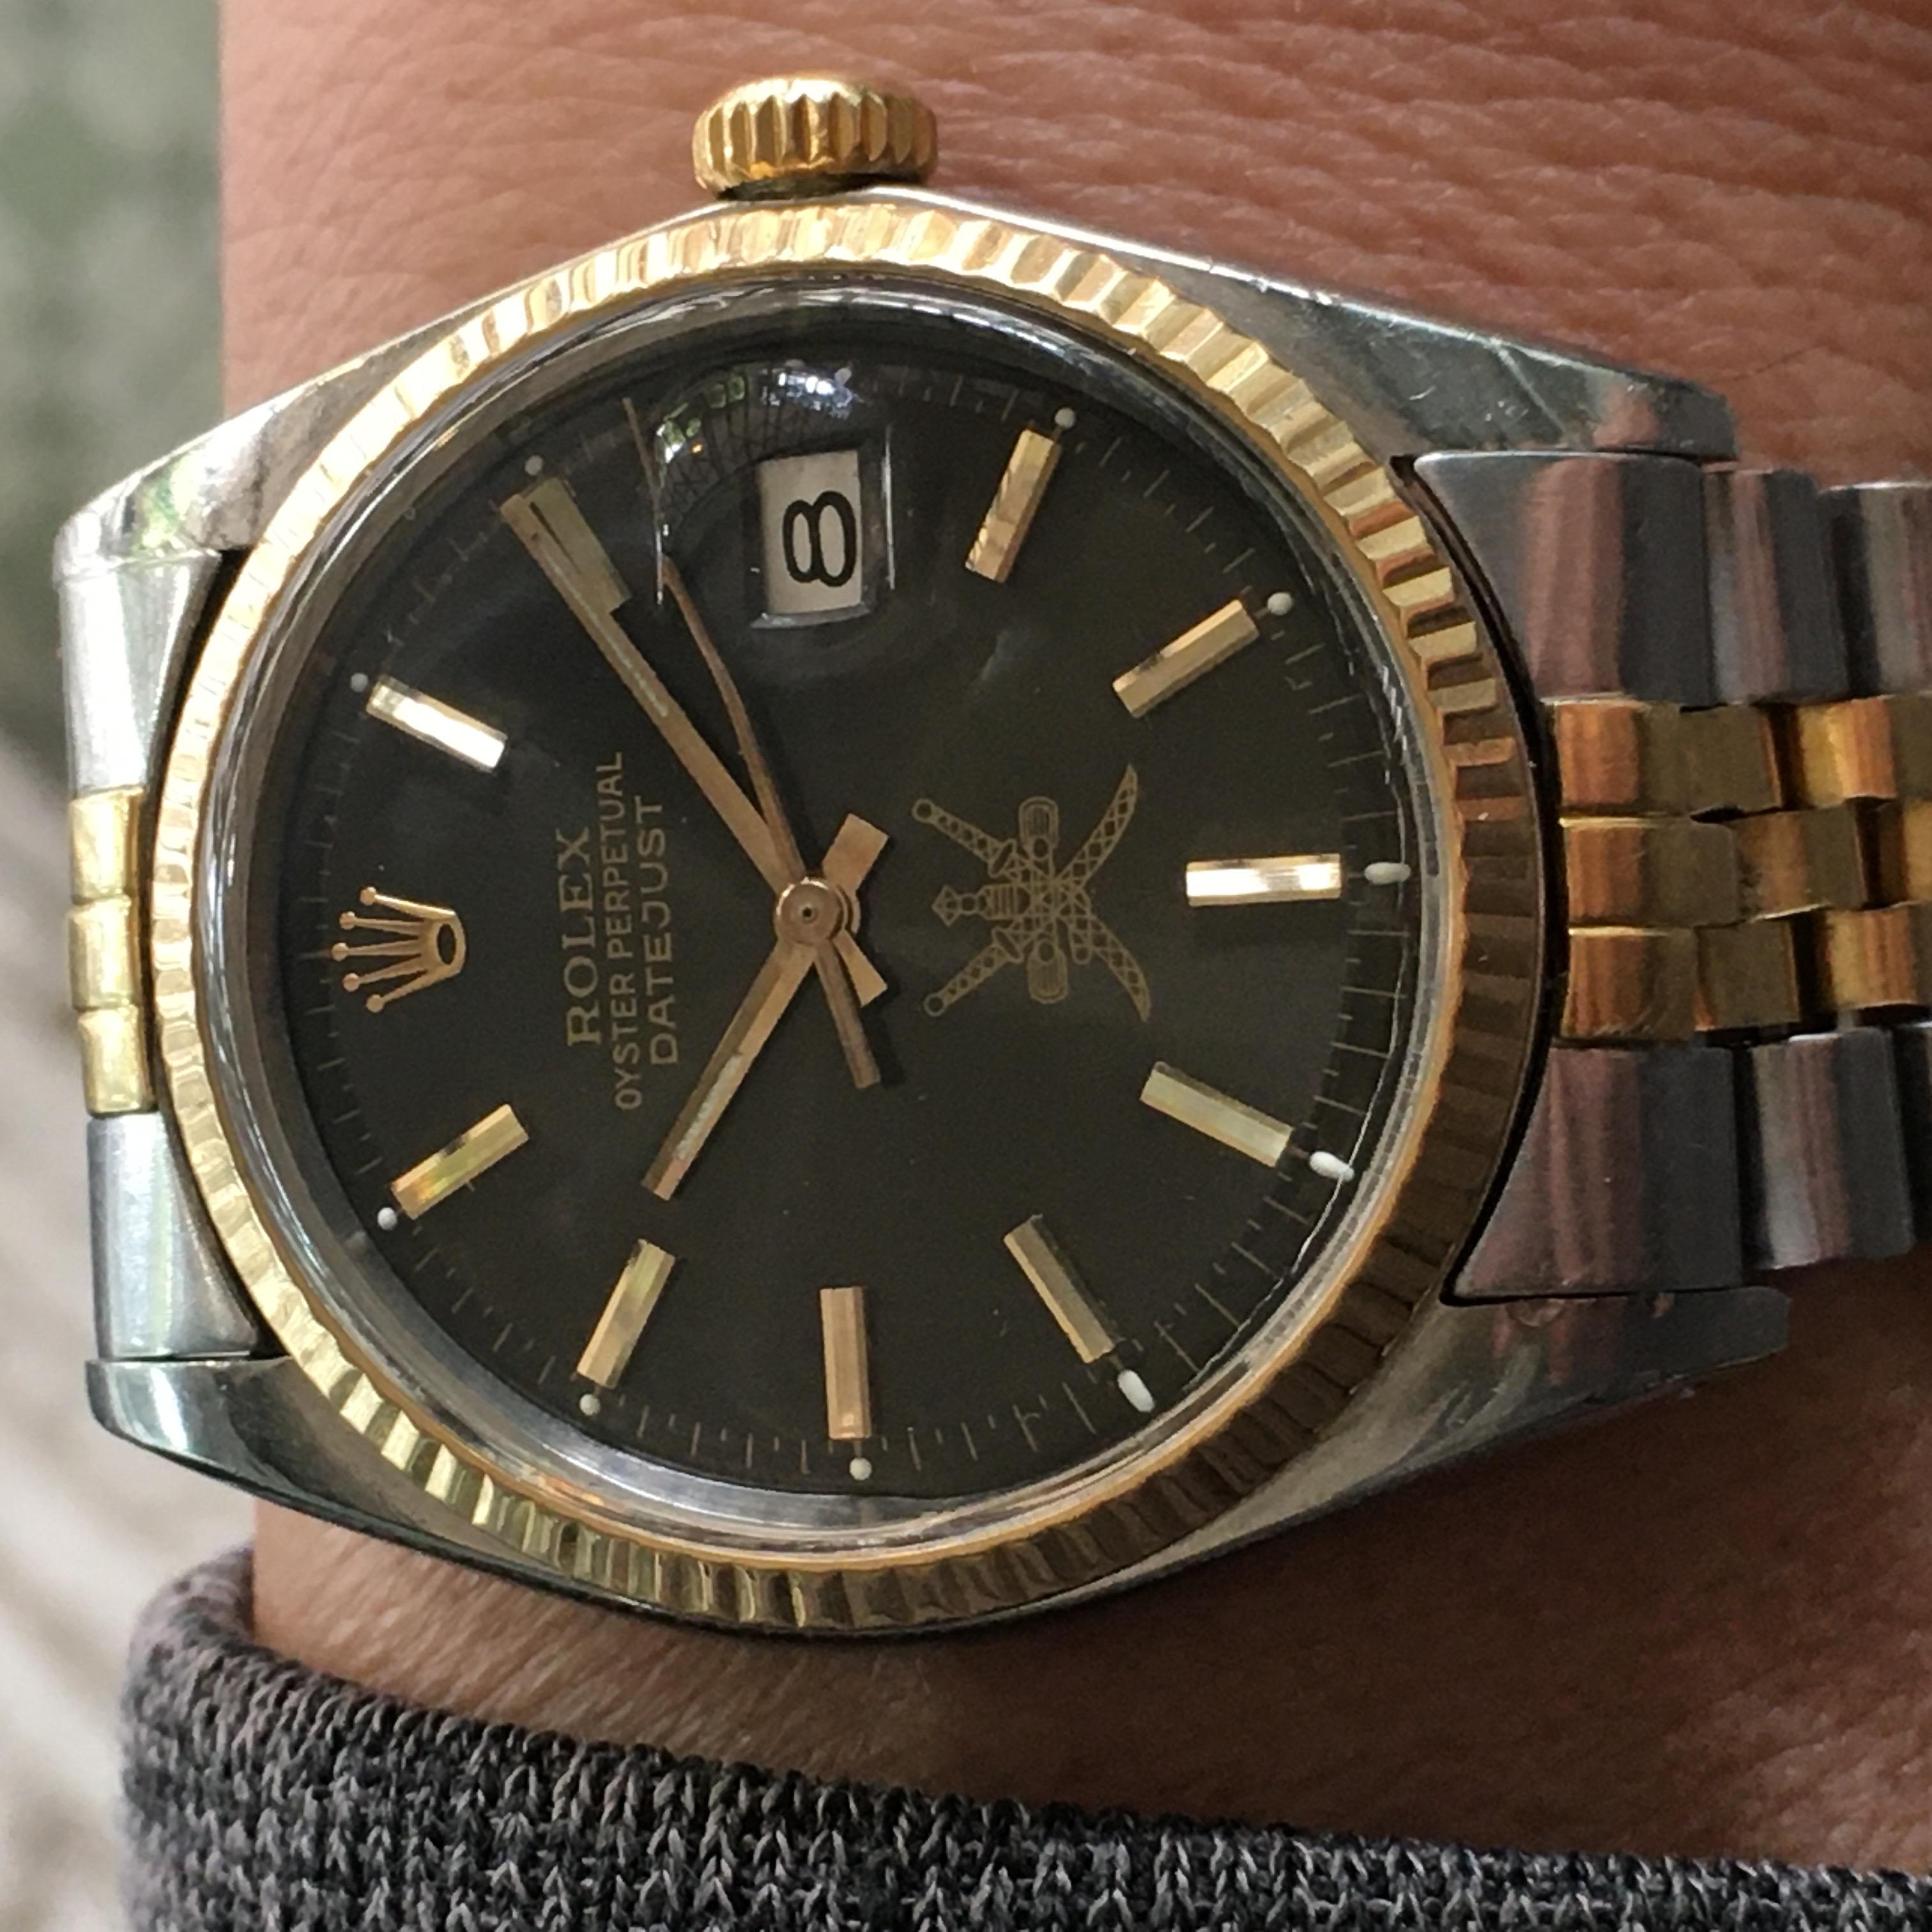 Dies ist ein Jahrgang 1974 Rolex Datejust Armbanduhr für Männer. Sie besitzt ein 36-mm-Edelstahlgehäuse mit einer goldenen geriffelten Lünette und ein schwarzes Khanjar-Zifferblatt mit mehreren Zeigern und einer 12-Stunden-Anzeige. Die Uhr hat ein